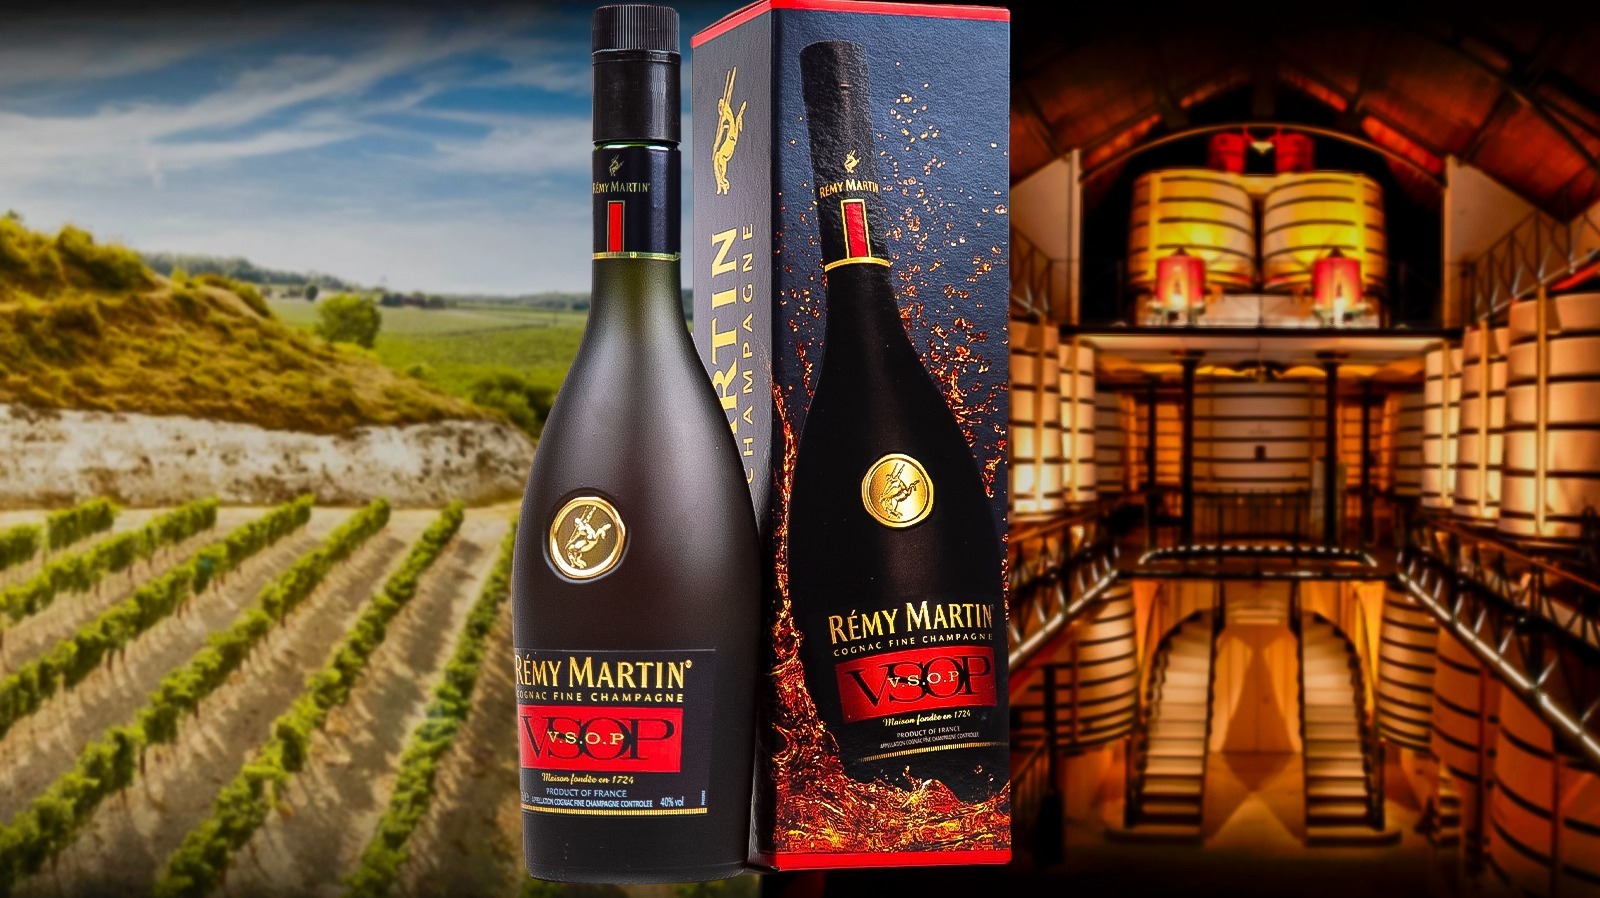 Remy Martin VSOP Cognac - Bottle Values